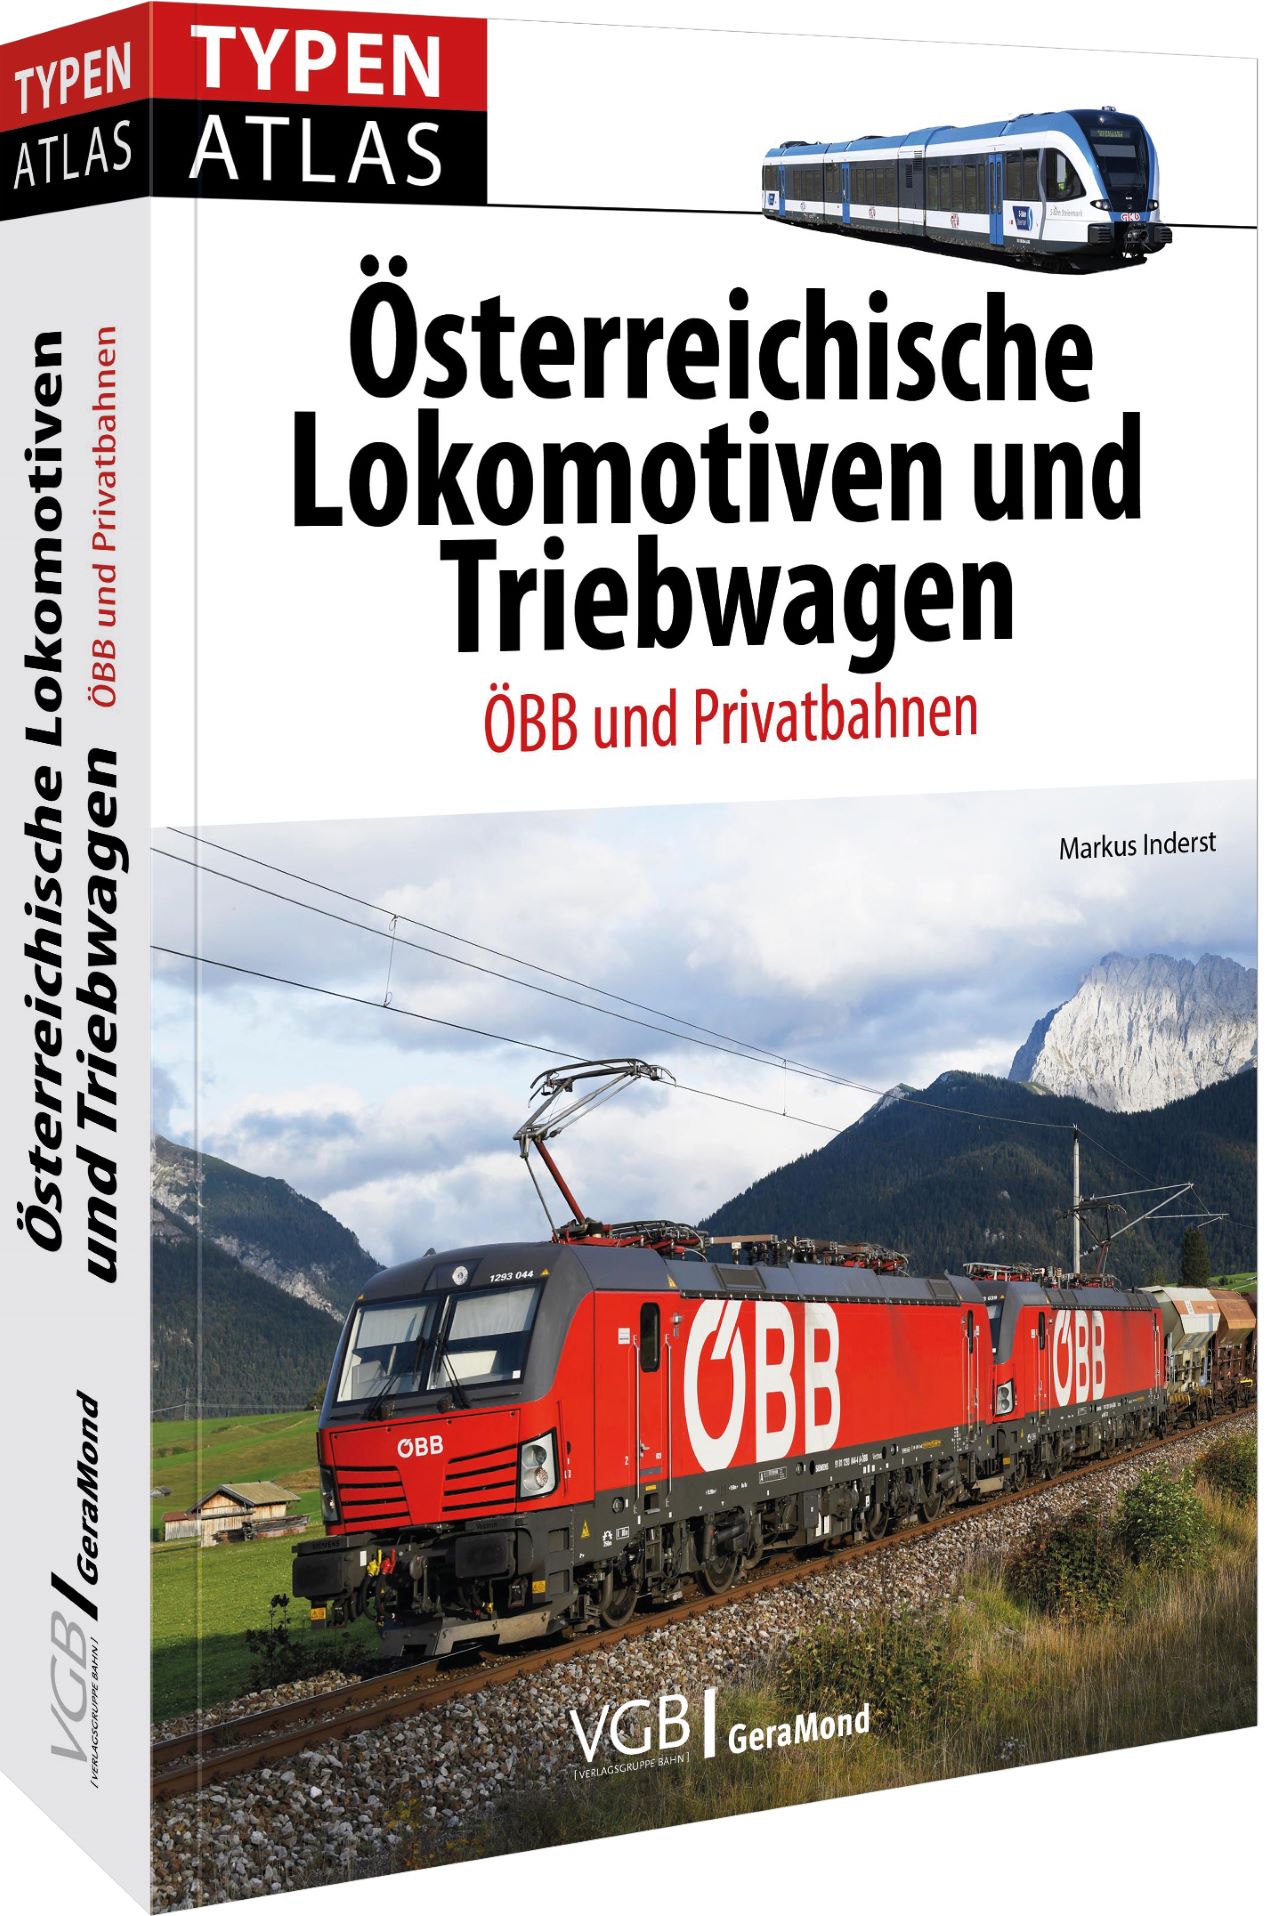 Buch Typenatlas Österreich Lokomotiven und Triebwagen